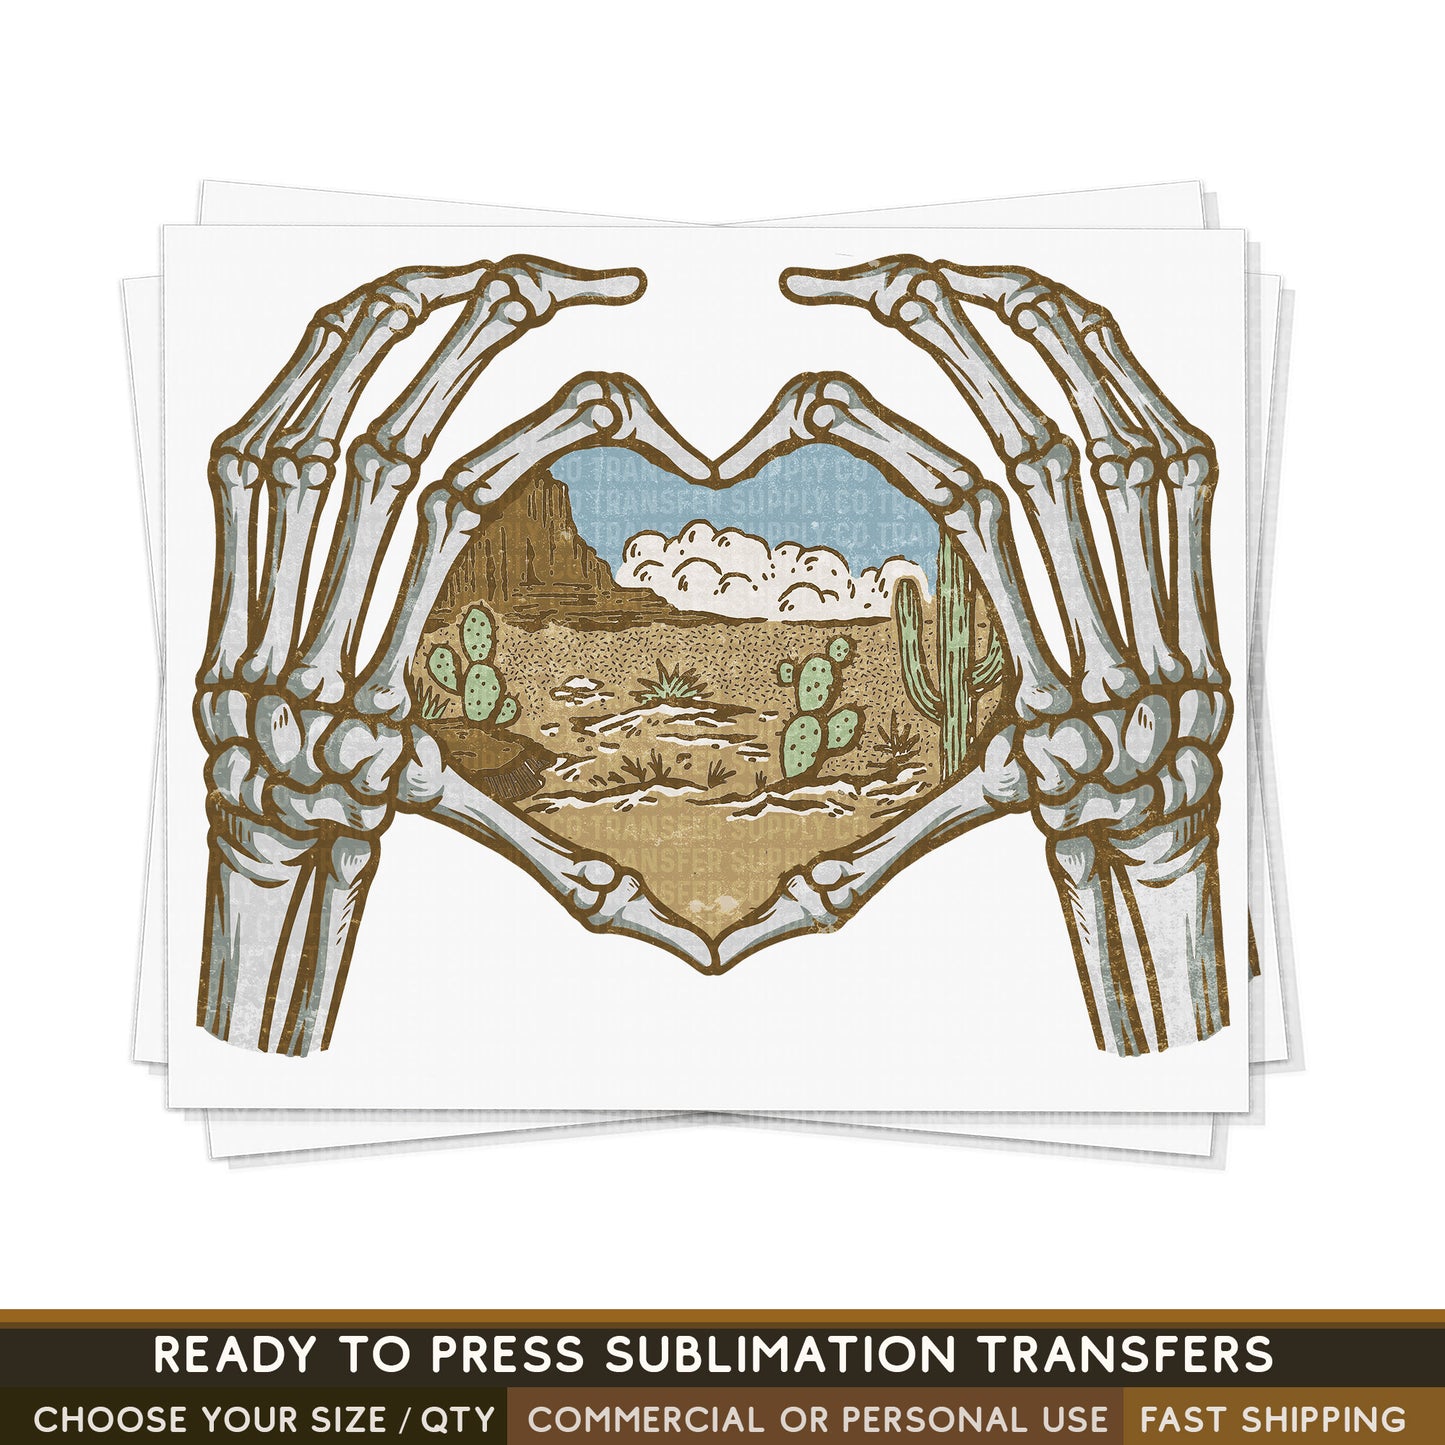 Skeleton Hands Holding Desert, Ready To Press Sublimation Transfers, Ready To Press Transfers,Sublimation Prints, Sublimation Transfer